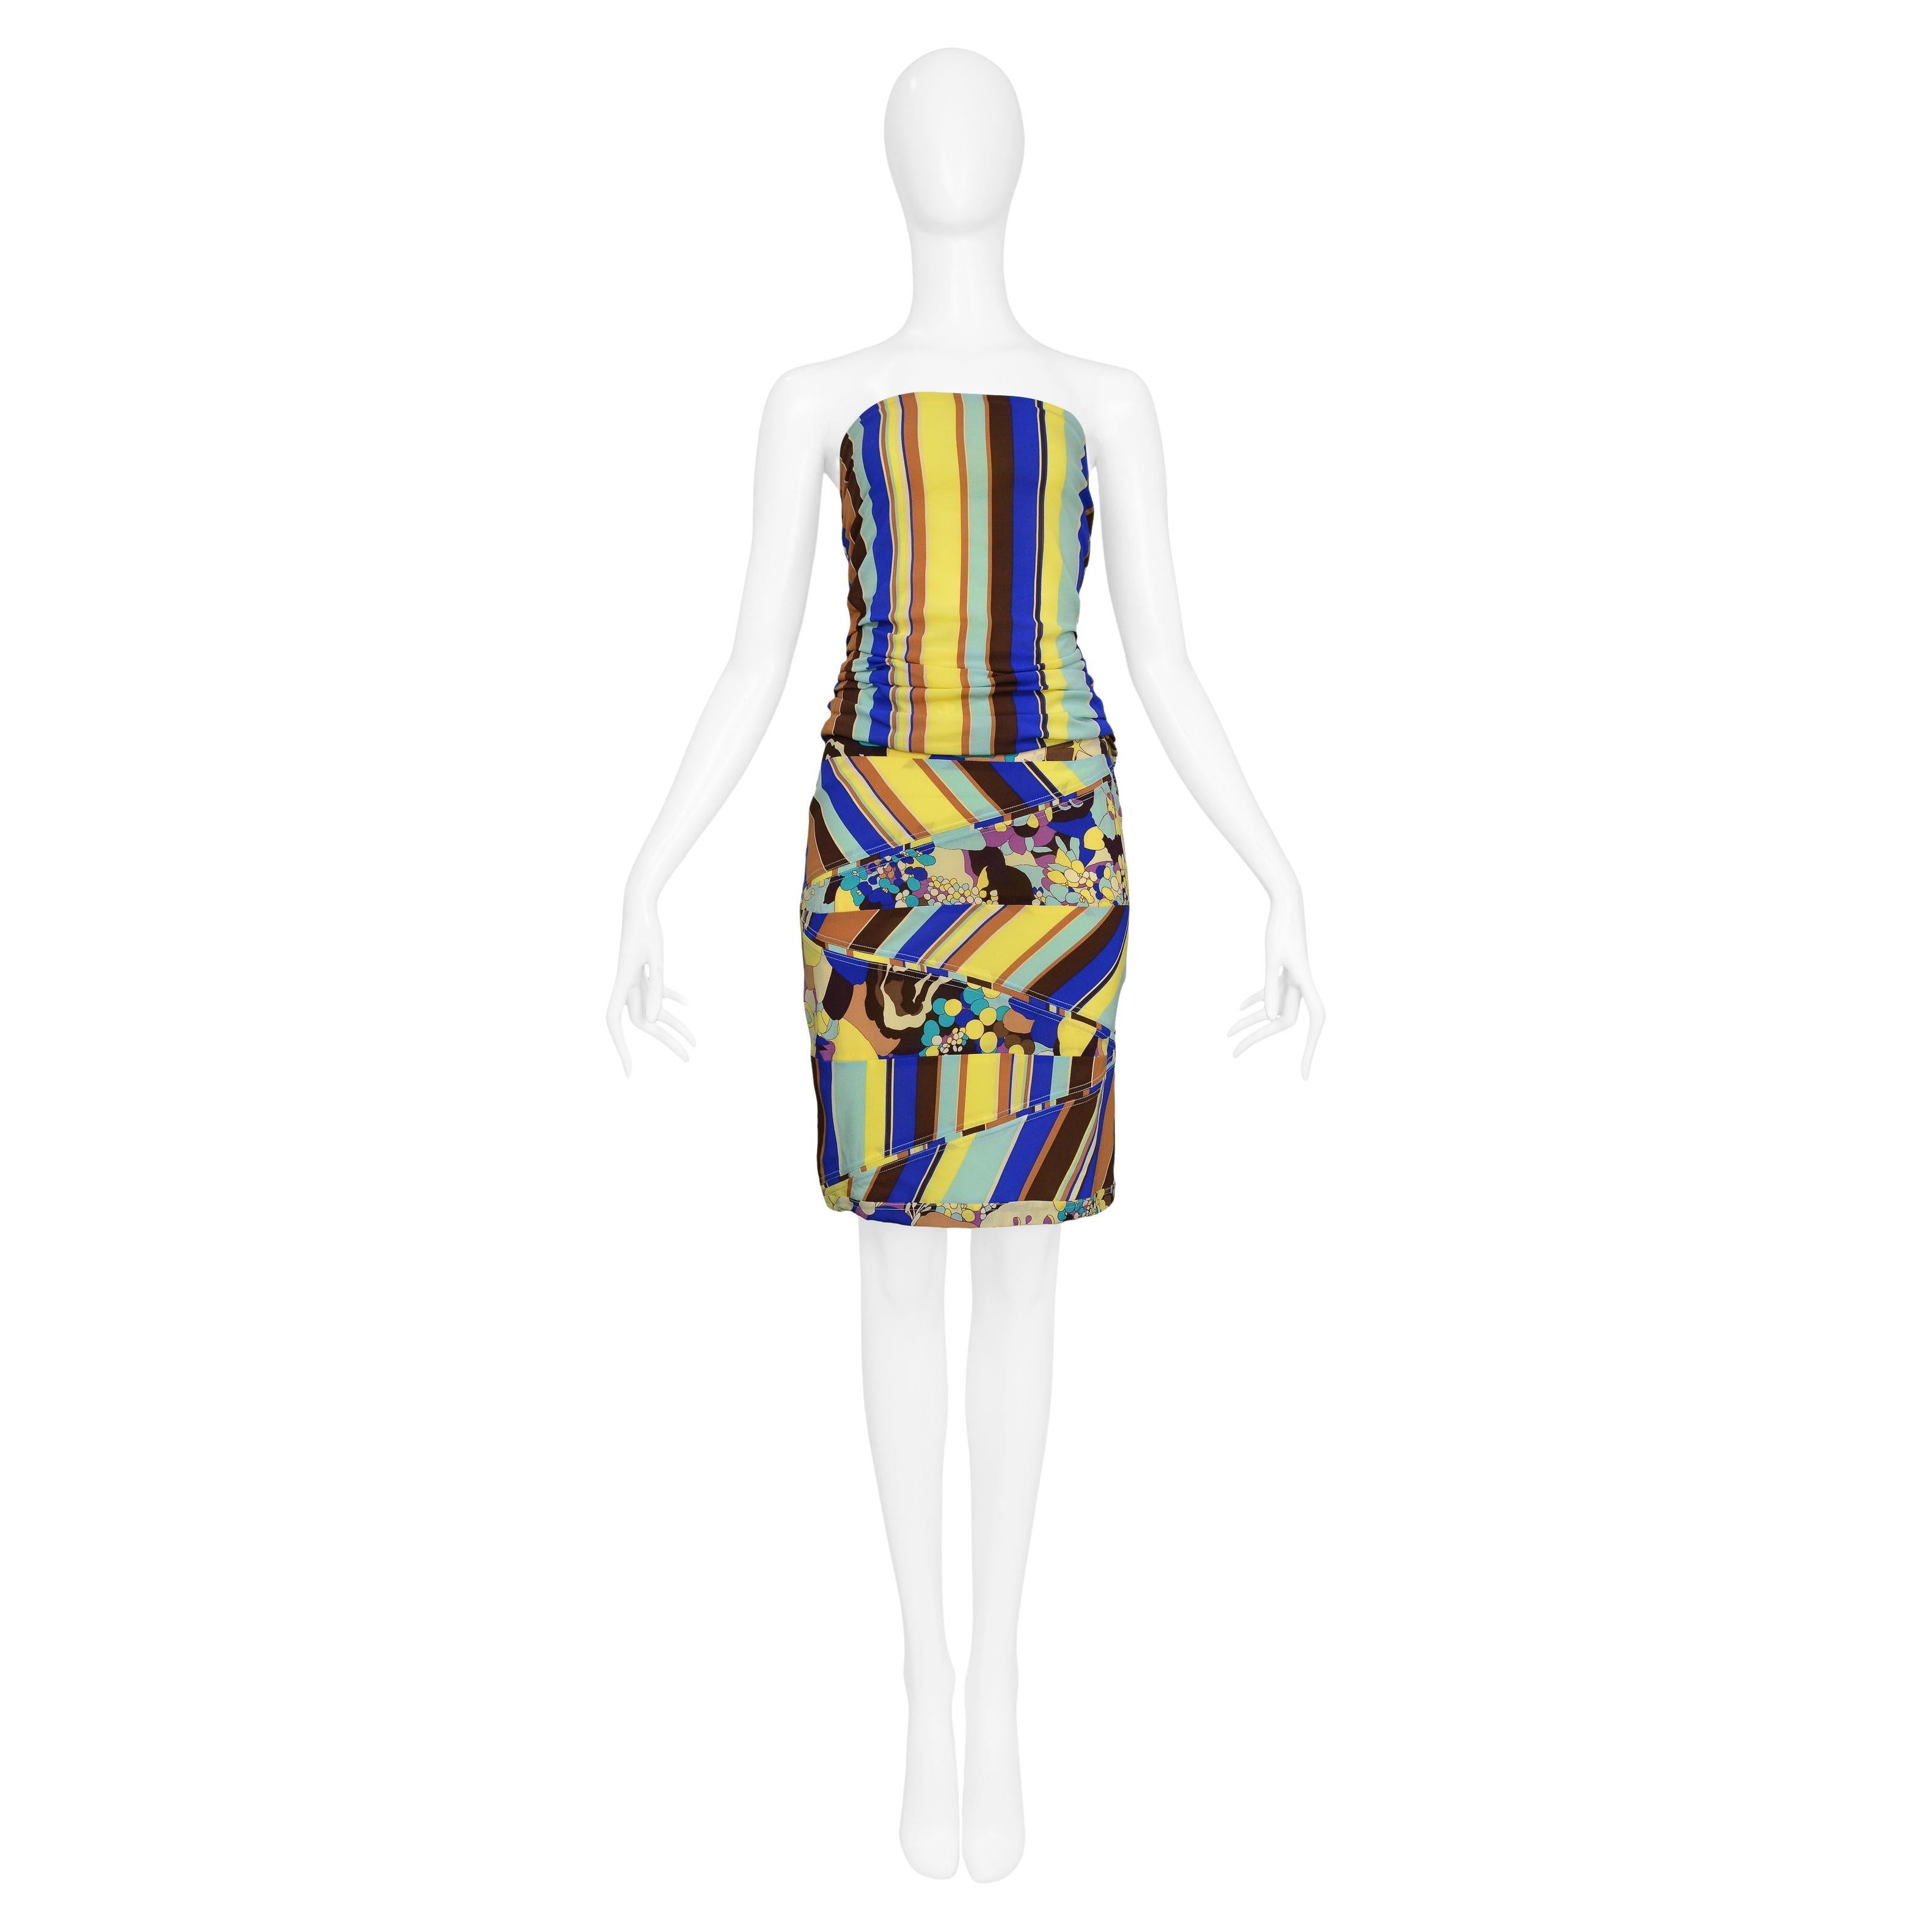 Resurrection Vintage a le plaisir de vous proposer un ensemble vintage de Versace composé d'un haut et d'une jupe à rayures jaunes, bleues et marron avec des empiècements floraux, un haut sans bretelles avec fermeture éclair sur le côté et une jupe